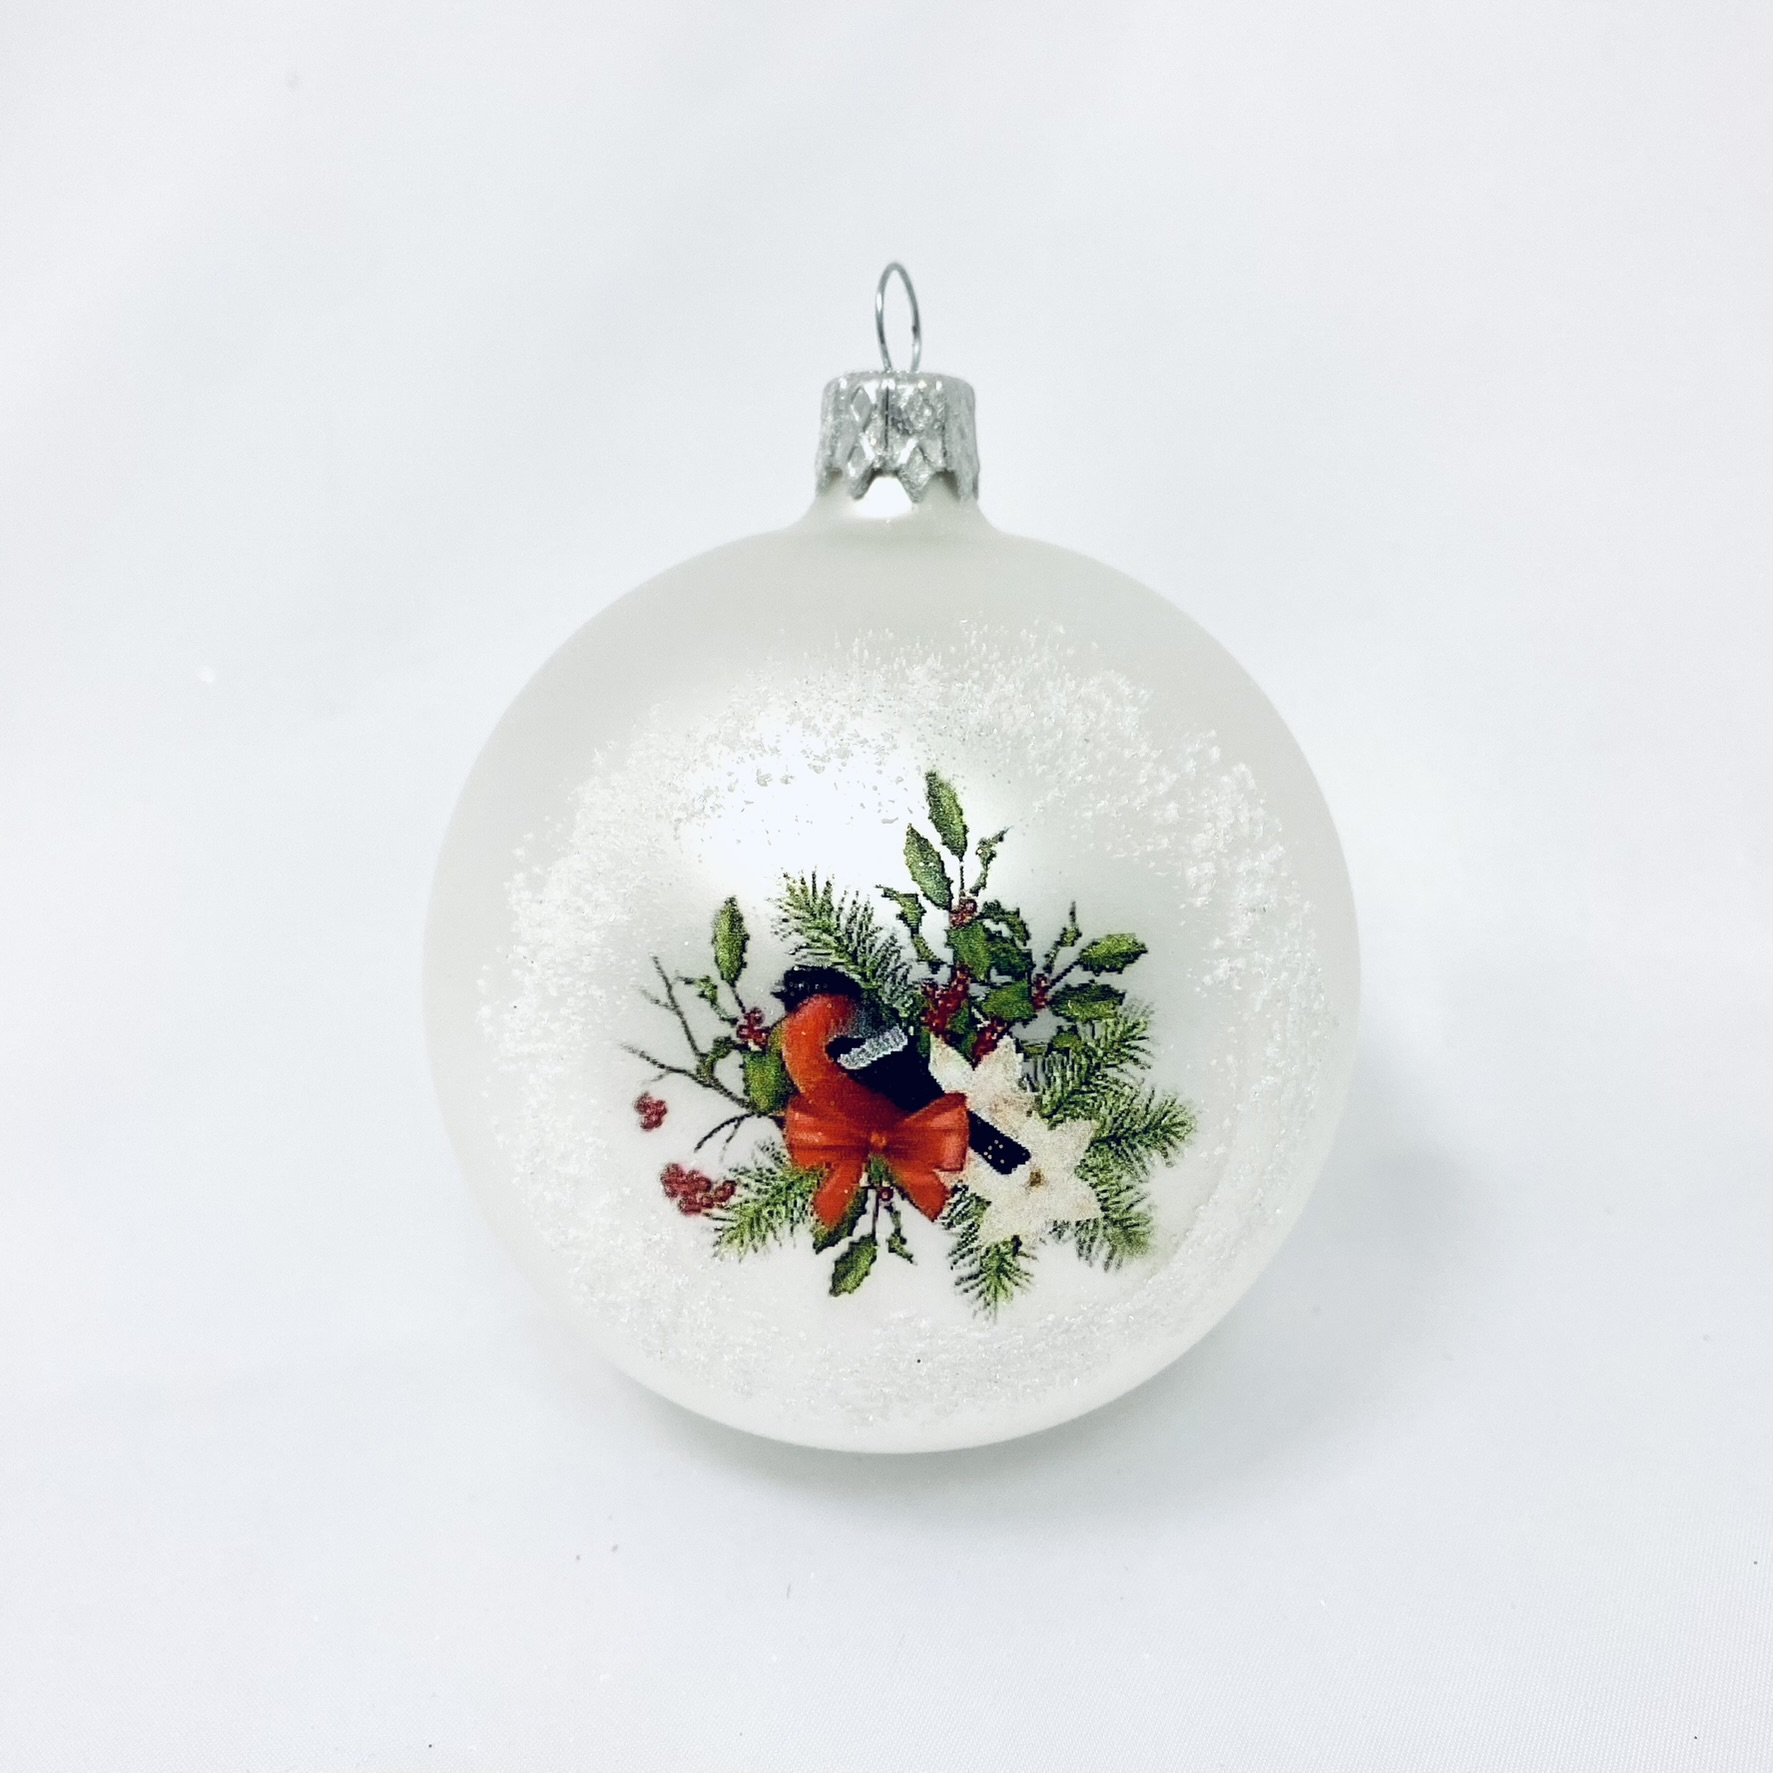 Skleněná vánoční ozdoba s textem na přání - Dekor ptáček na smrkové větvičce (1 ks, 8 cm) Balení: 1ks, Barva: bílá, Velikost: 8 cm